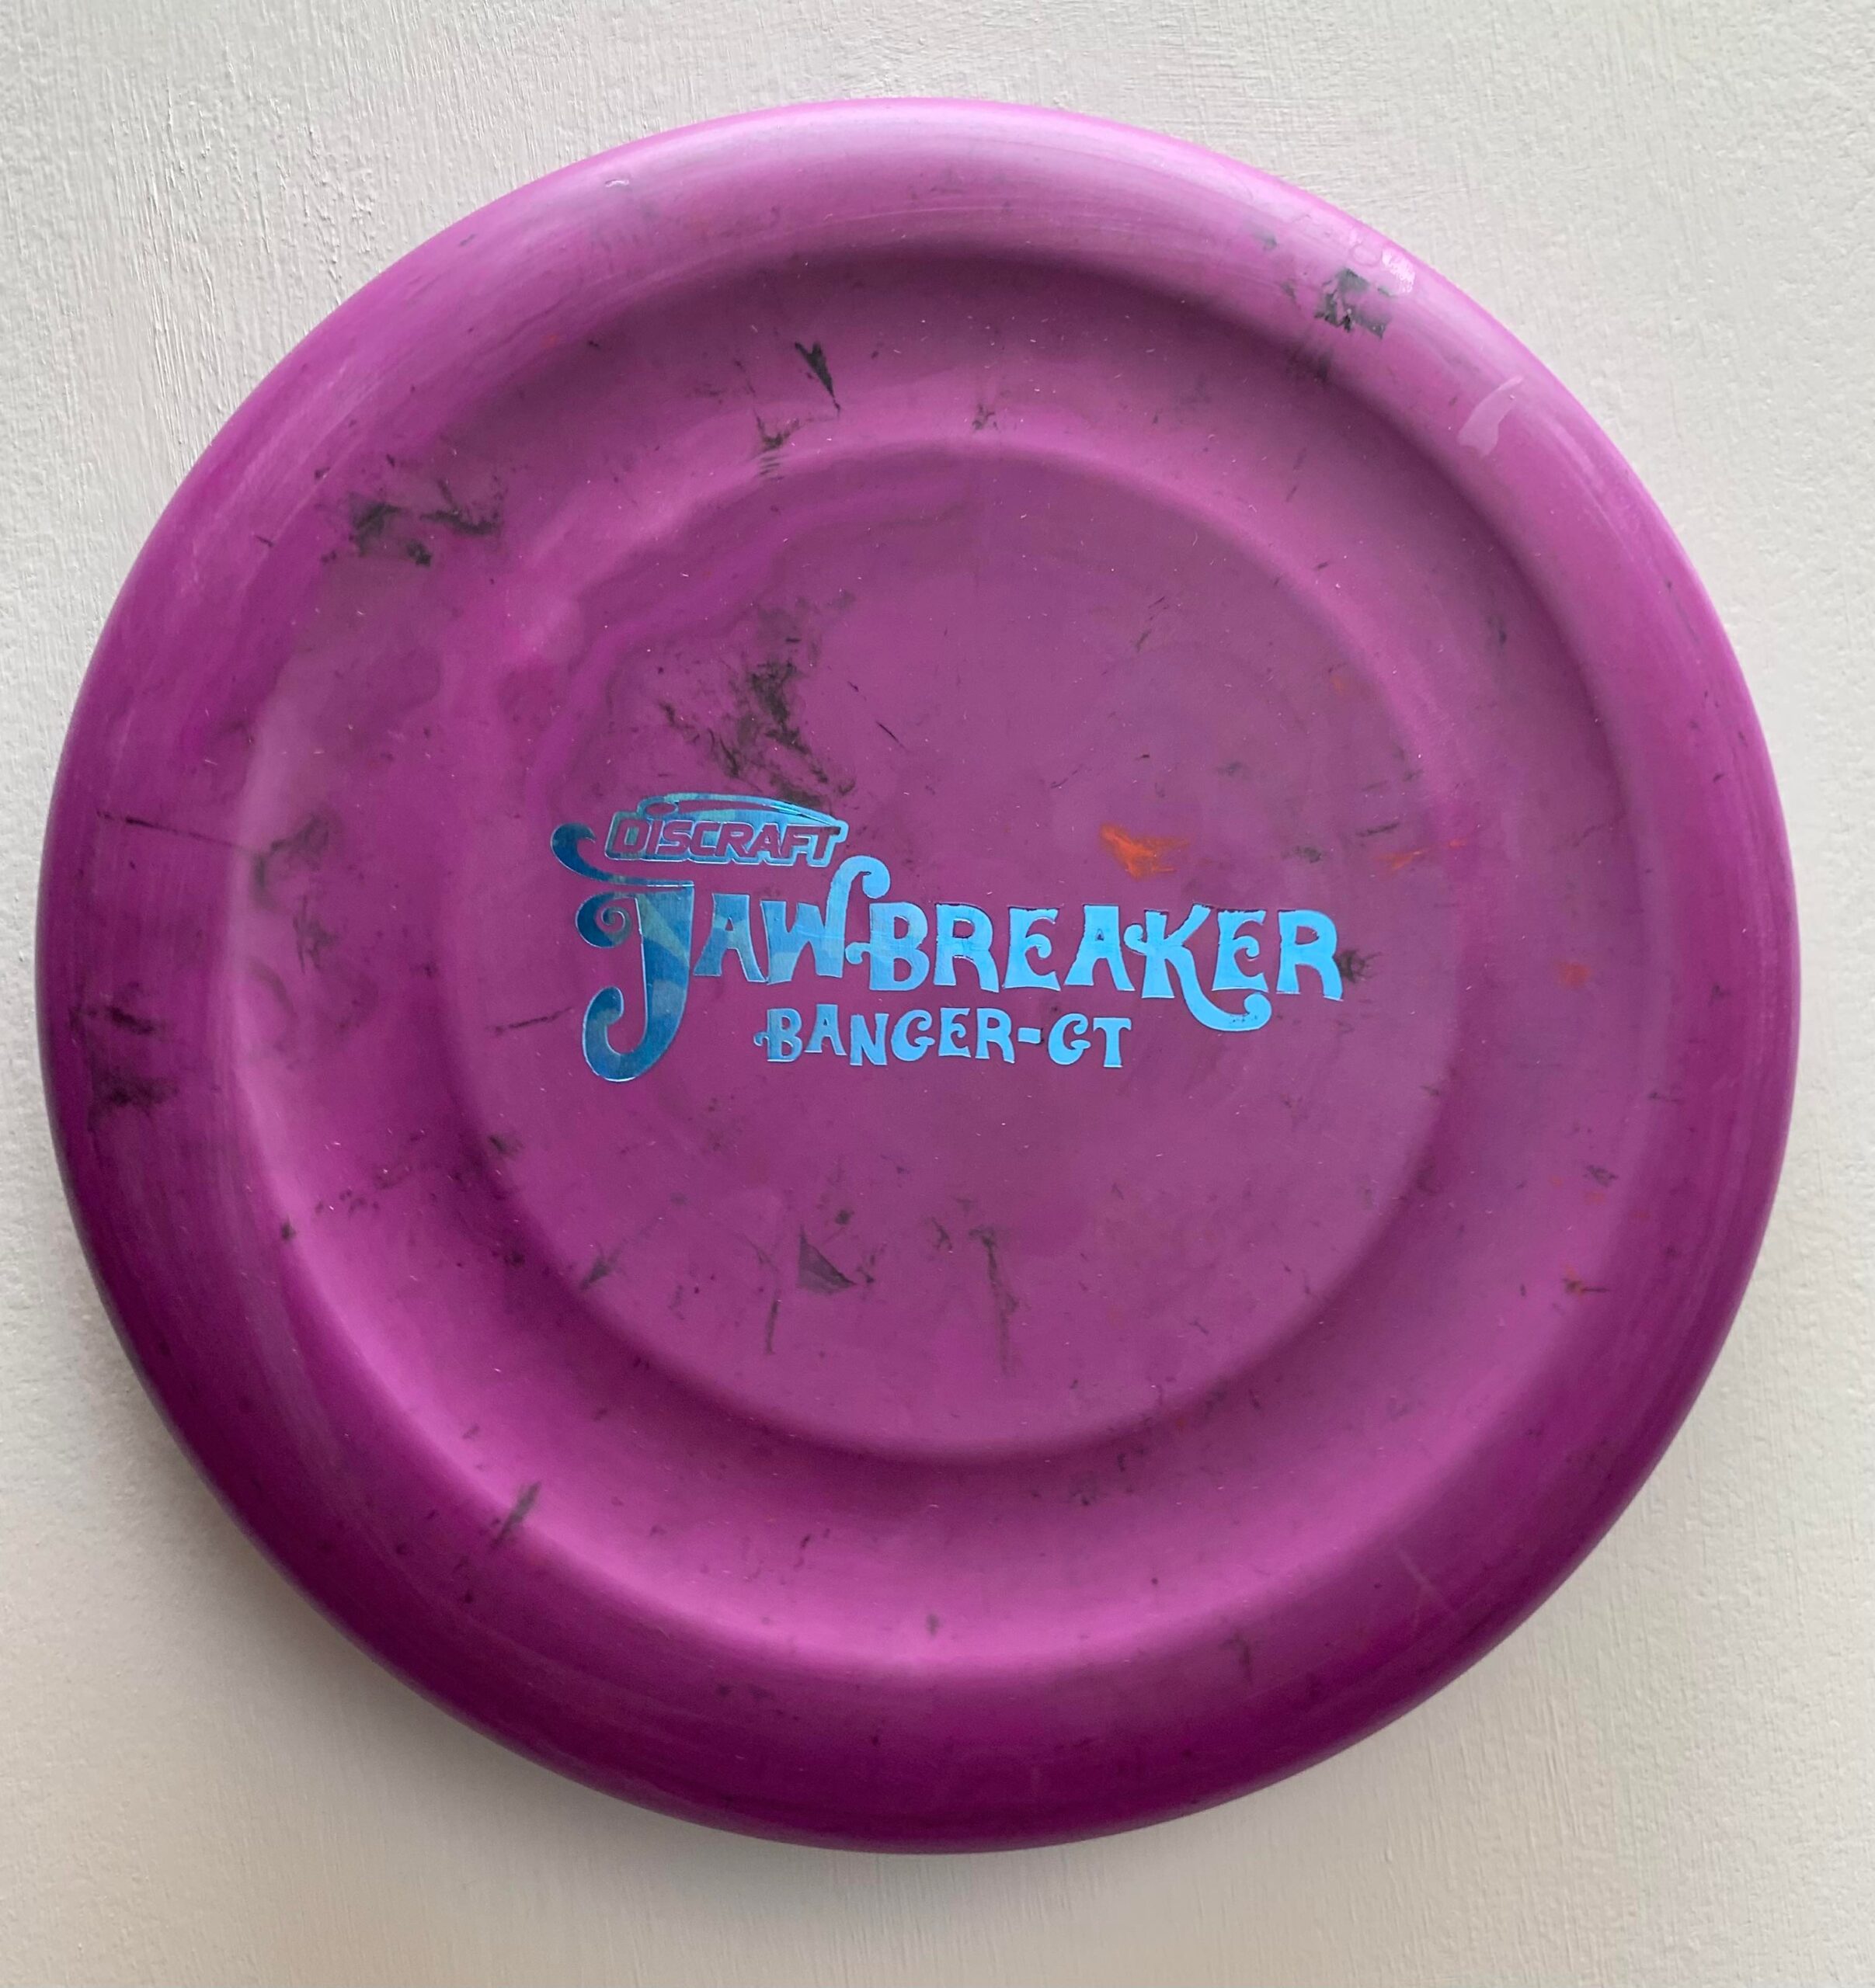 Discraft Jawbreaker Banger Gt Sweet Spot Disc Golf